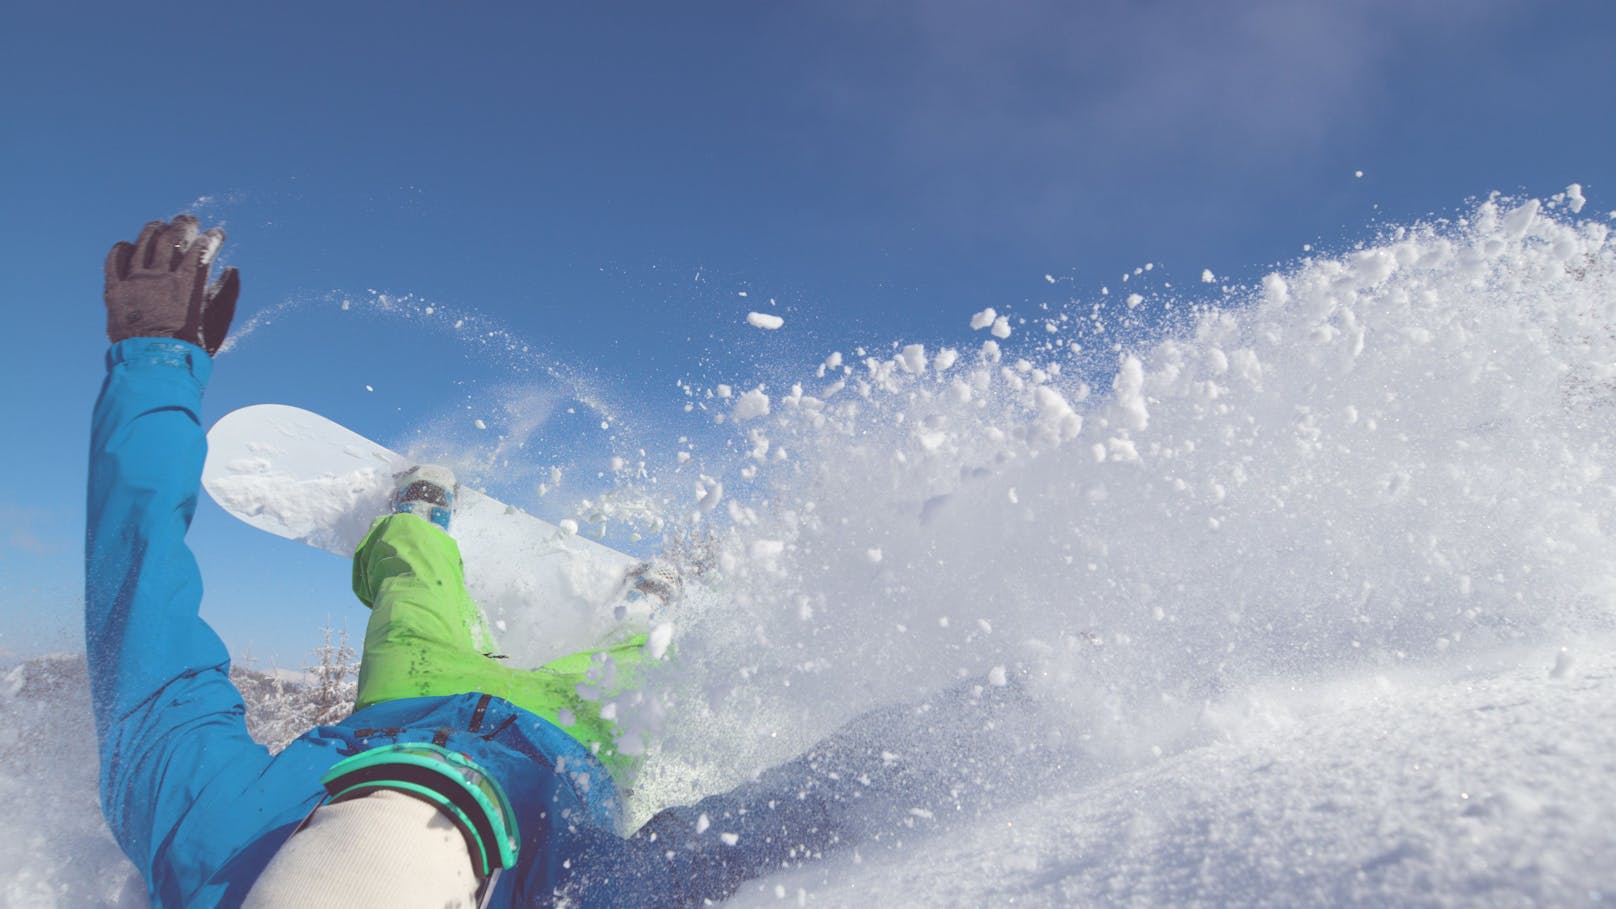 Verirrter Snowboarder muss für seine Rettung zahlen